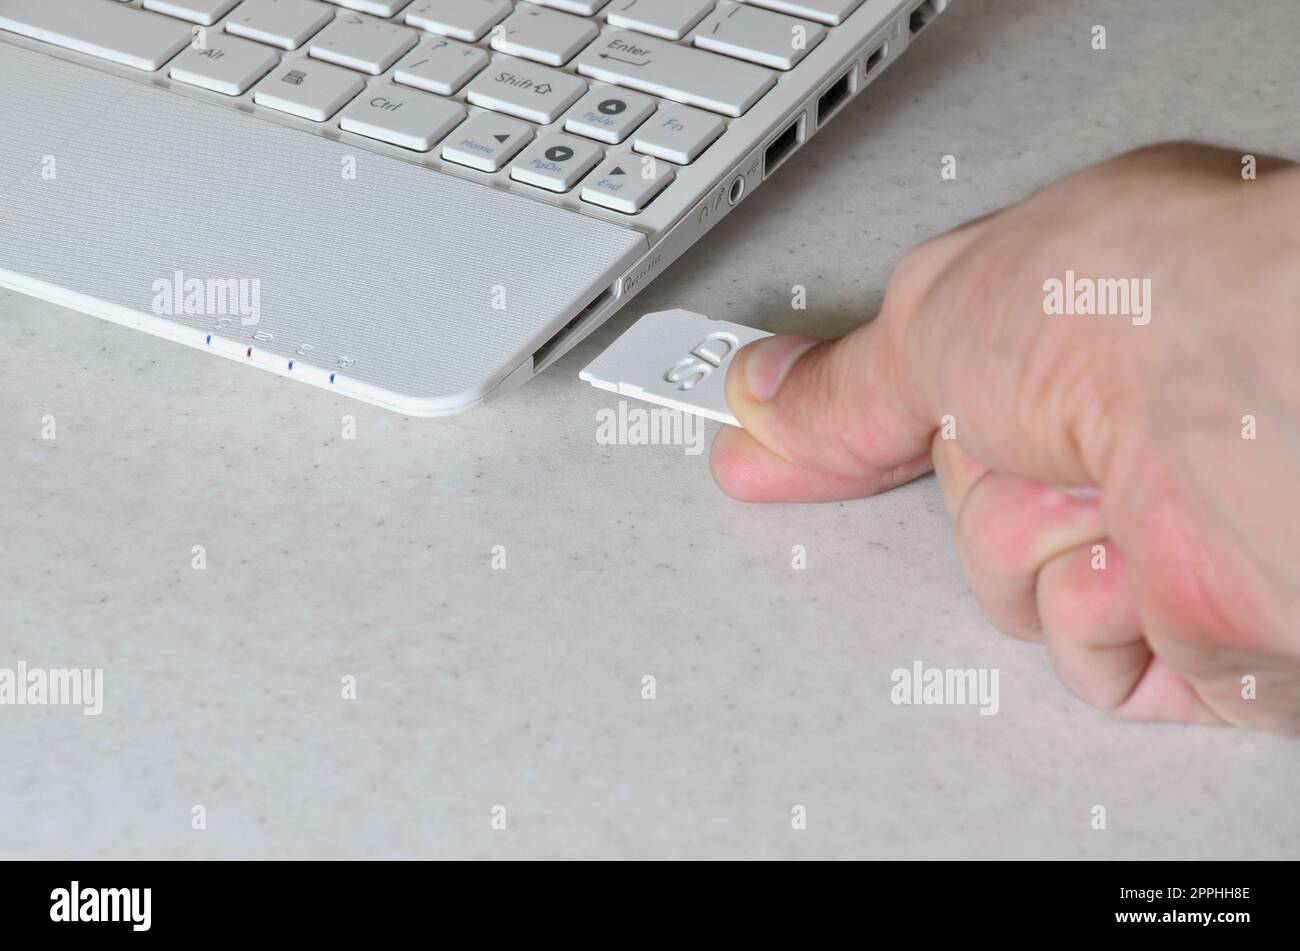 Une main masculine insère une carte SD compacte blanche dans l'entrée correspondante sur le côté du netbook blanc. L'homme utilise les technologies modernes pour stocker la mémoire et les données numériques Banque D'Images